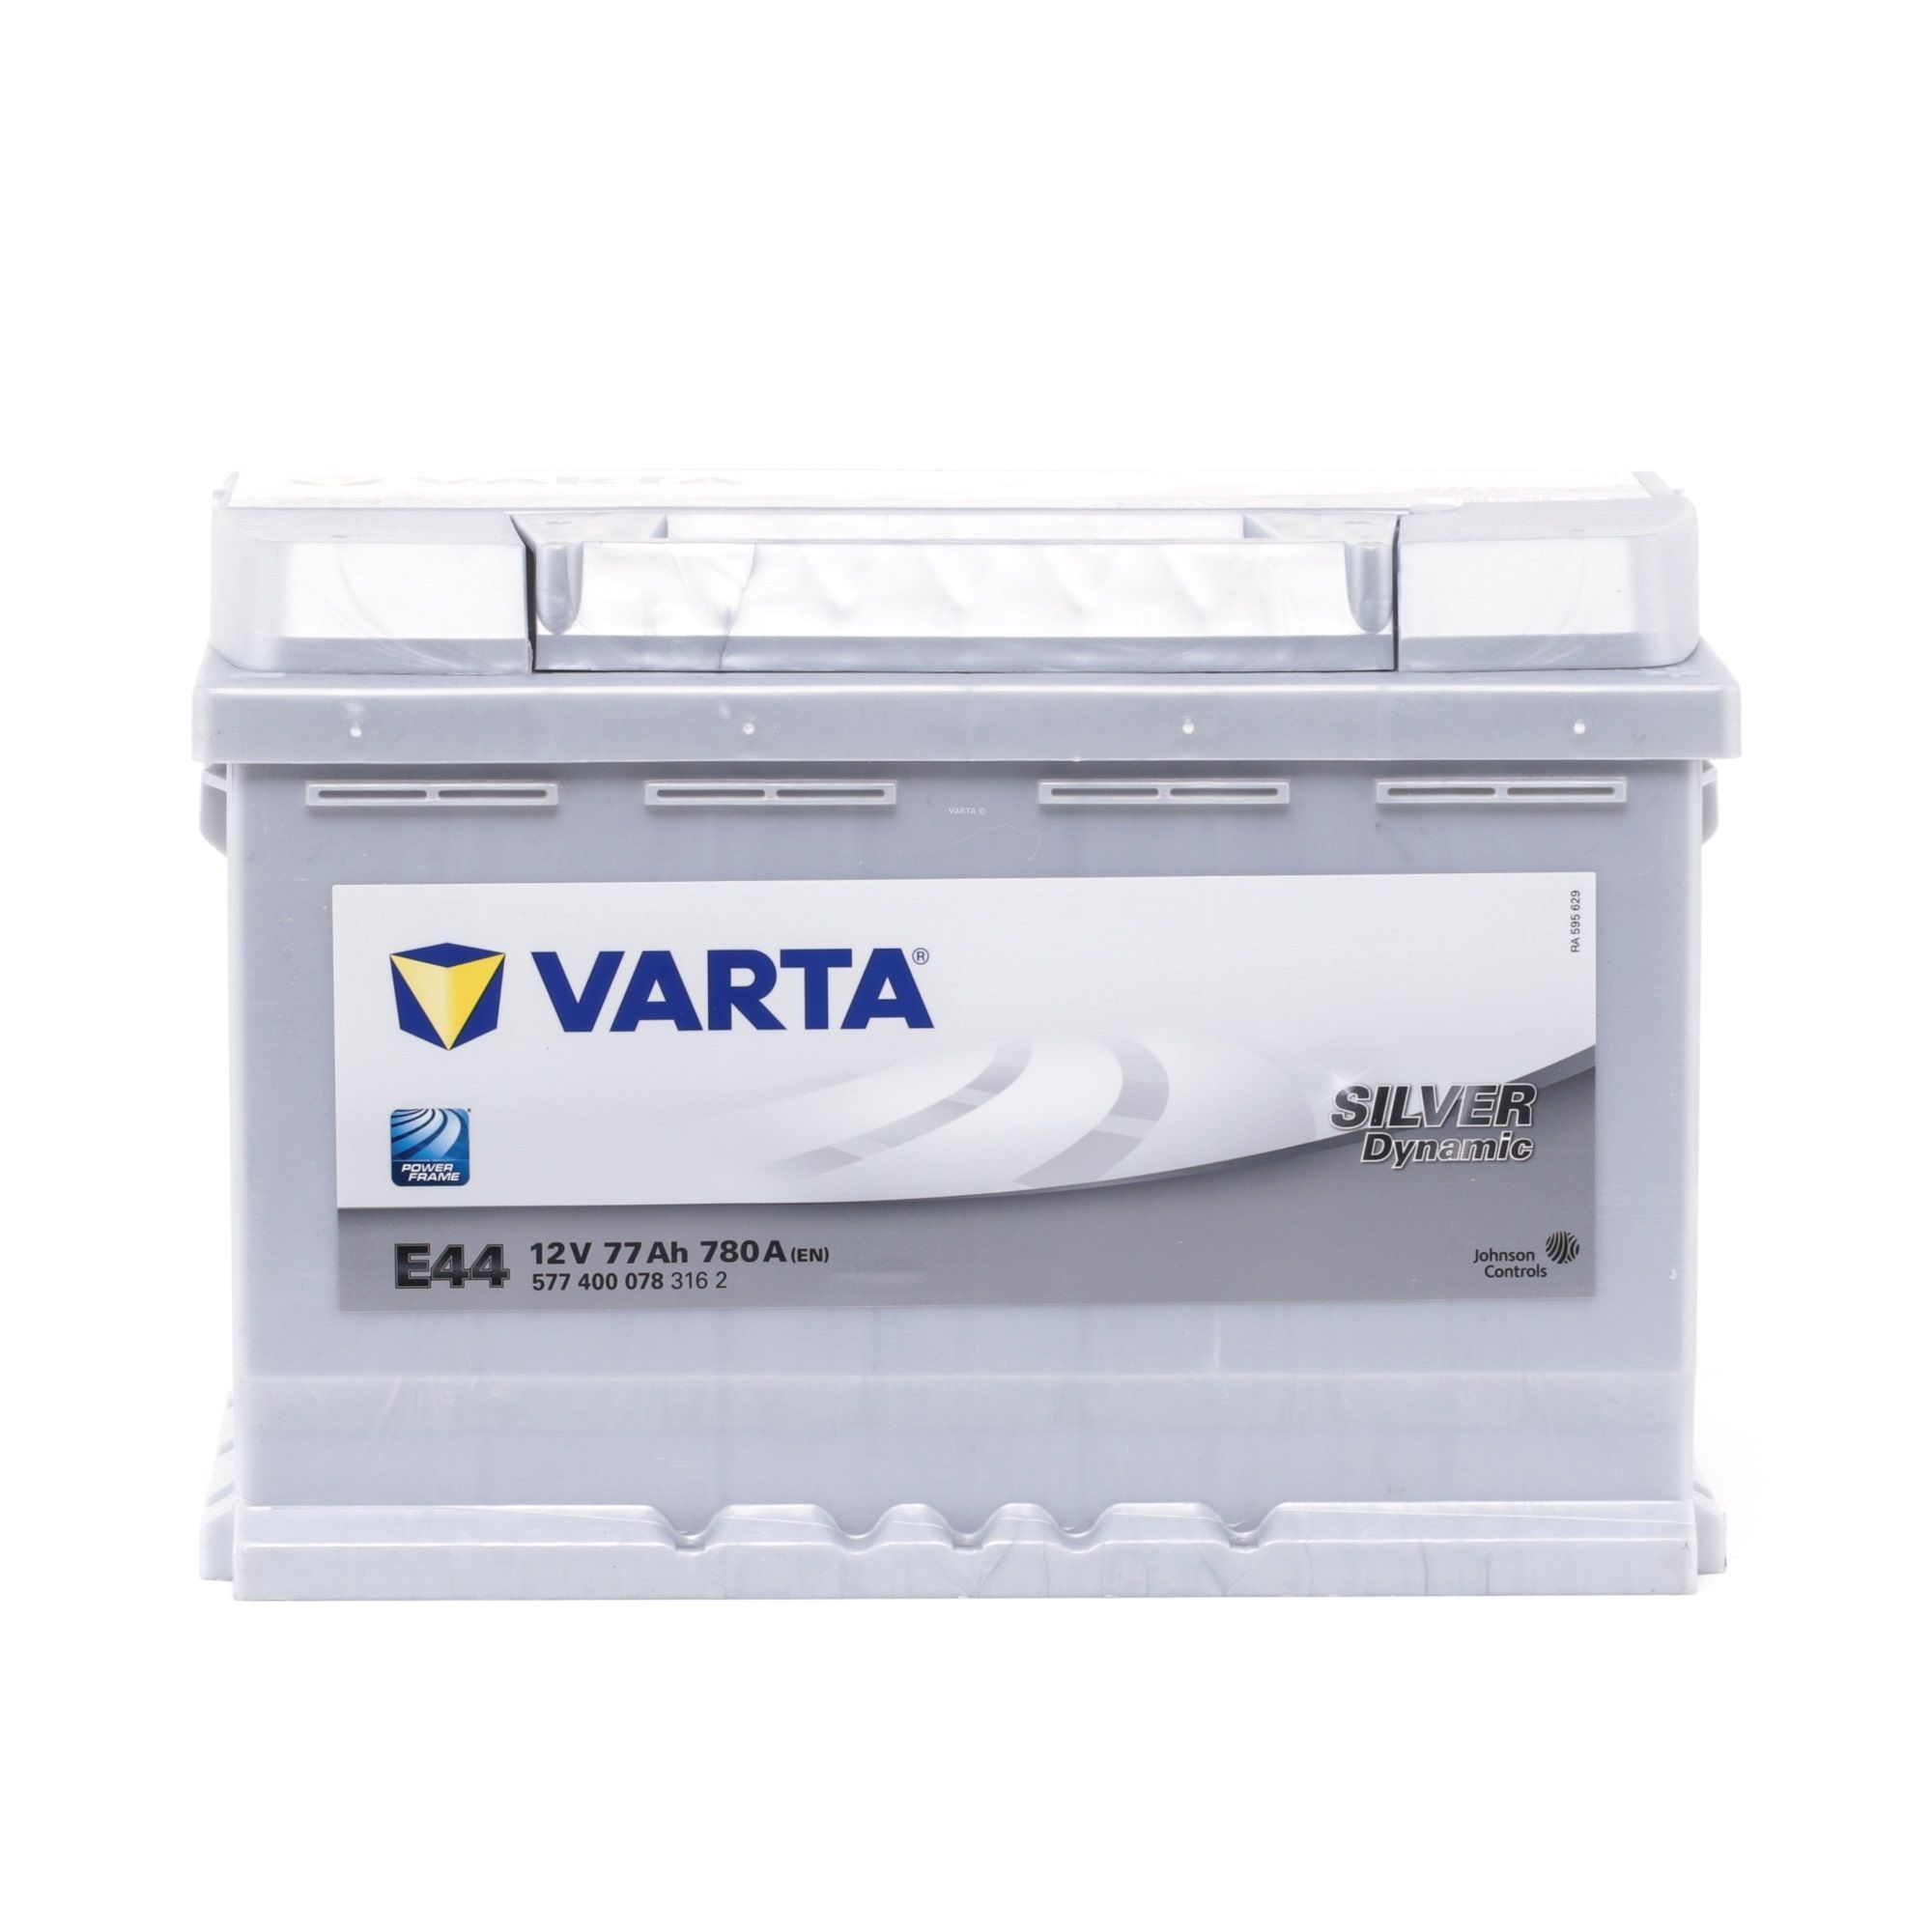 VARTA Starterbatterie 5774000783162